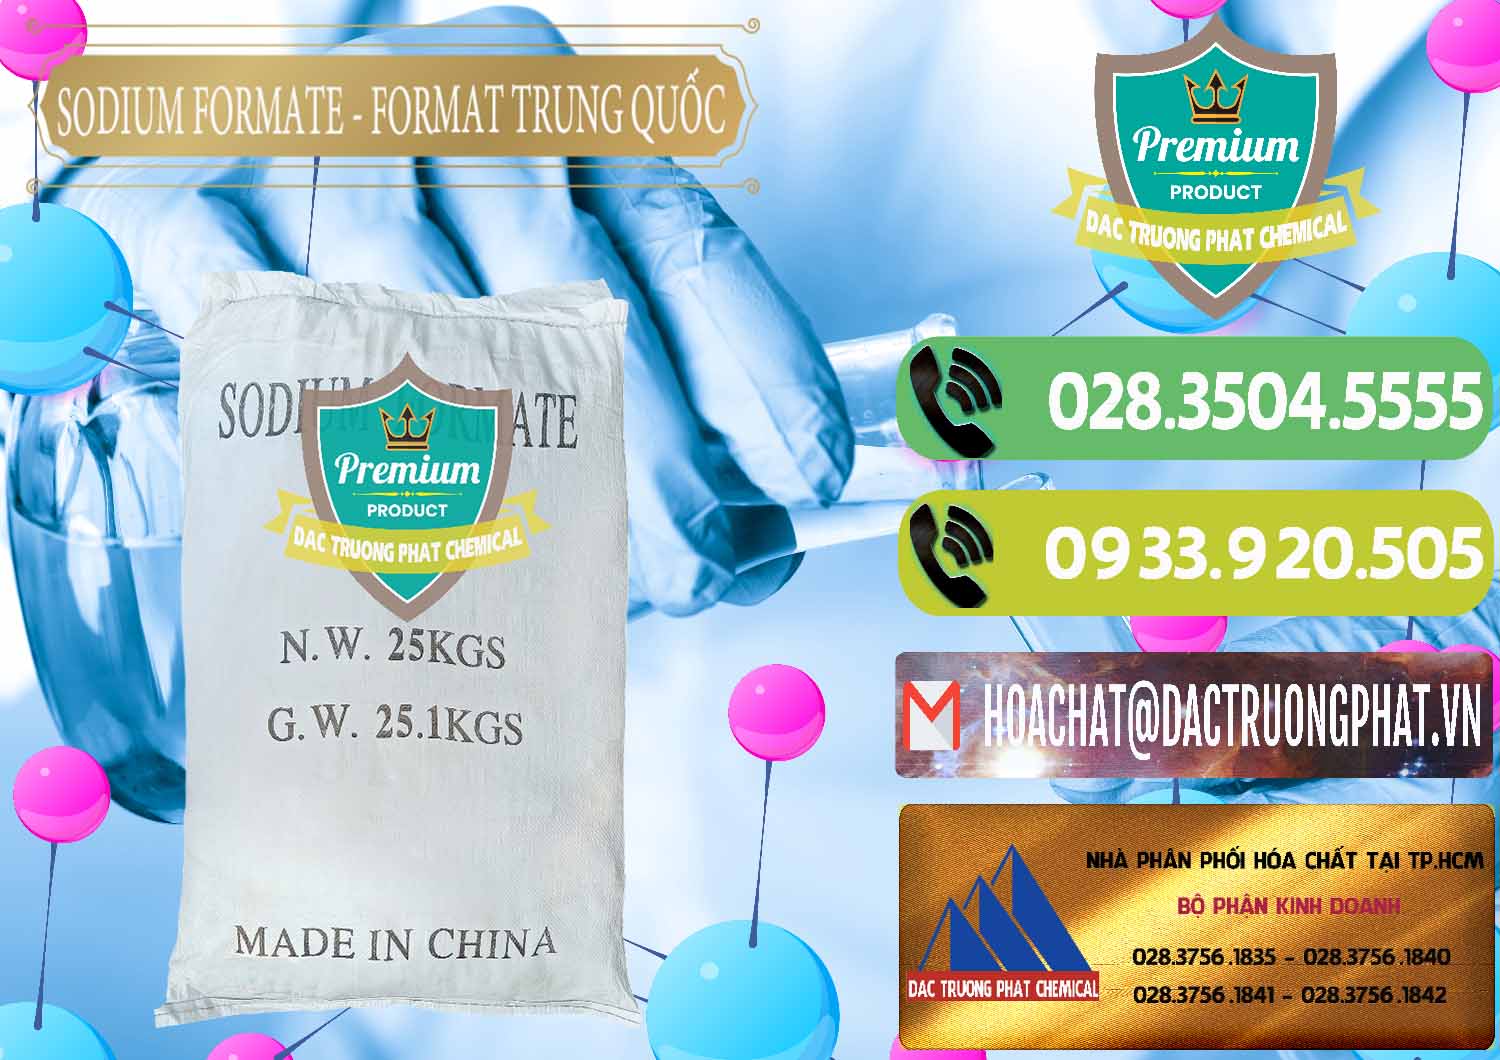 Công ty chuyên cung ứng - bán Sodium Formate - Natri Format Trung Quốc China - 0142 - Chuyên phân phối _ cung cấp hóa chất tại TP.HCM - hoachatmientay.vn